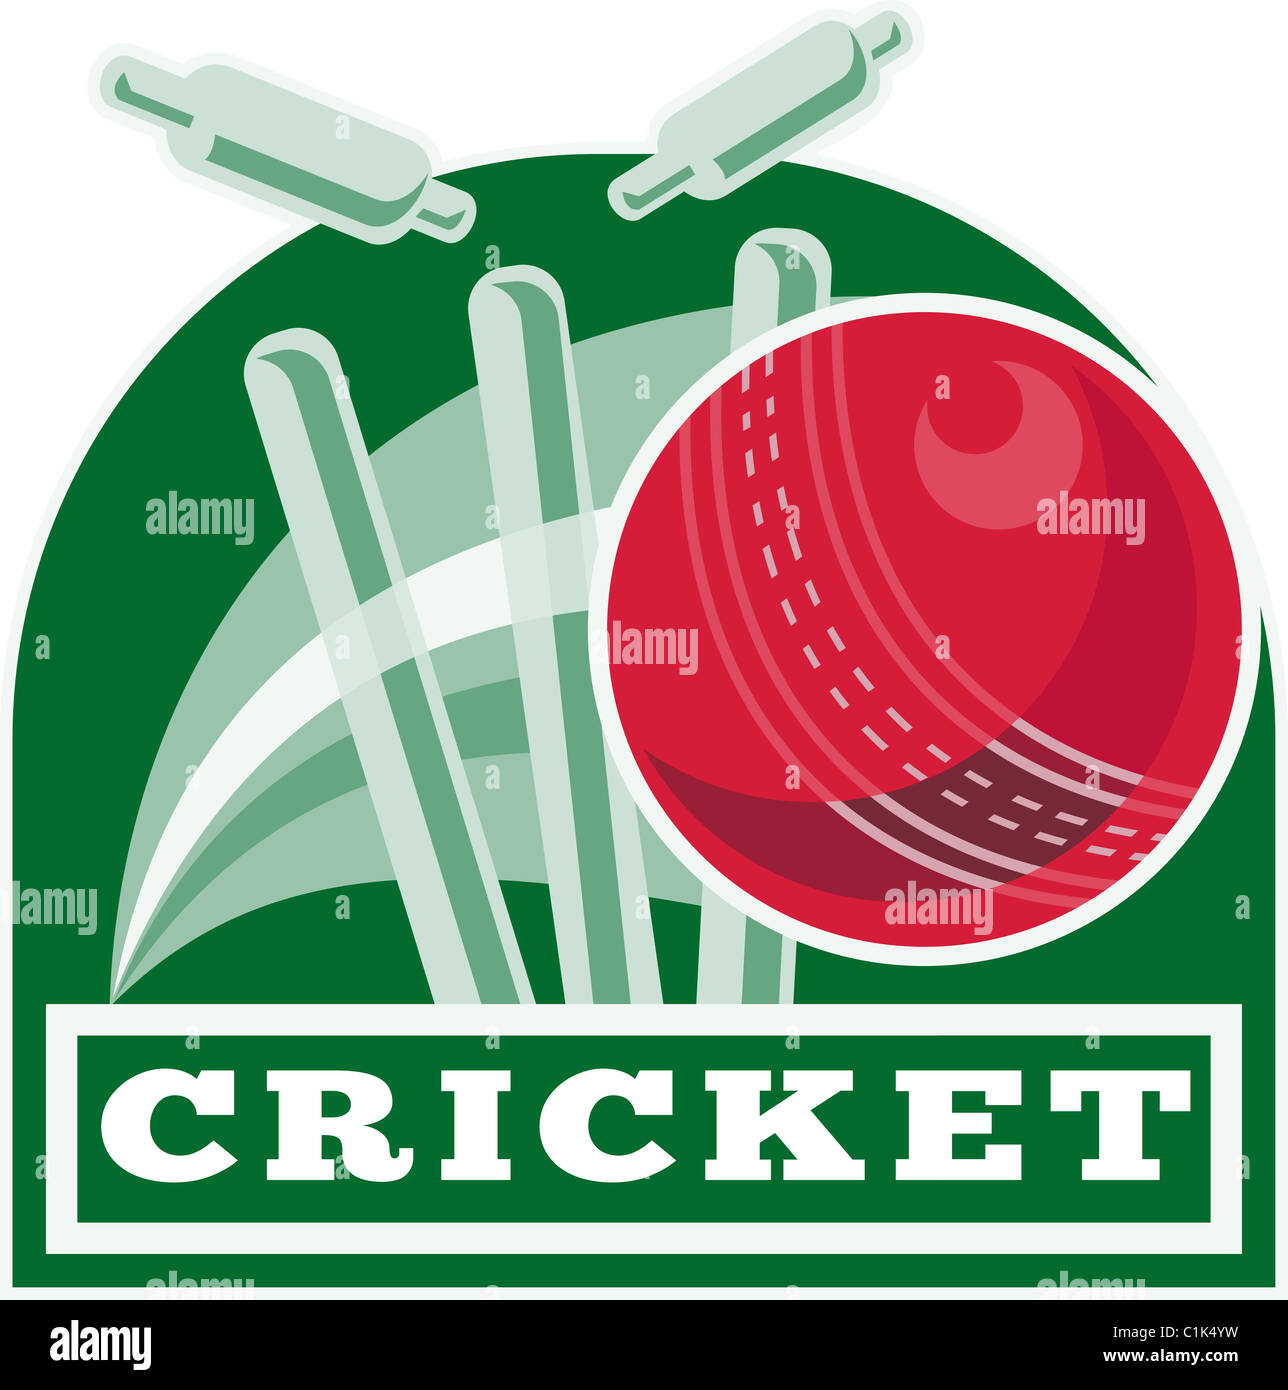 Beispiel für ein Cricketball trifft bowling über Wicket mit Worten "Cricket" Stockfoto